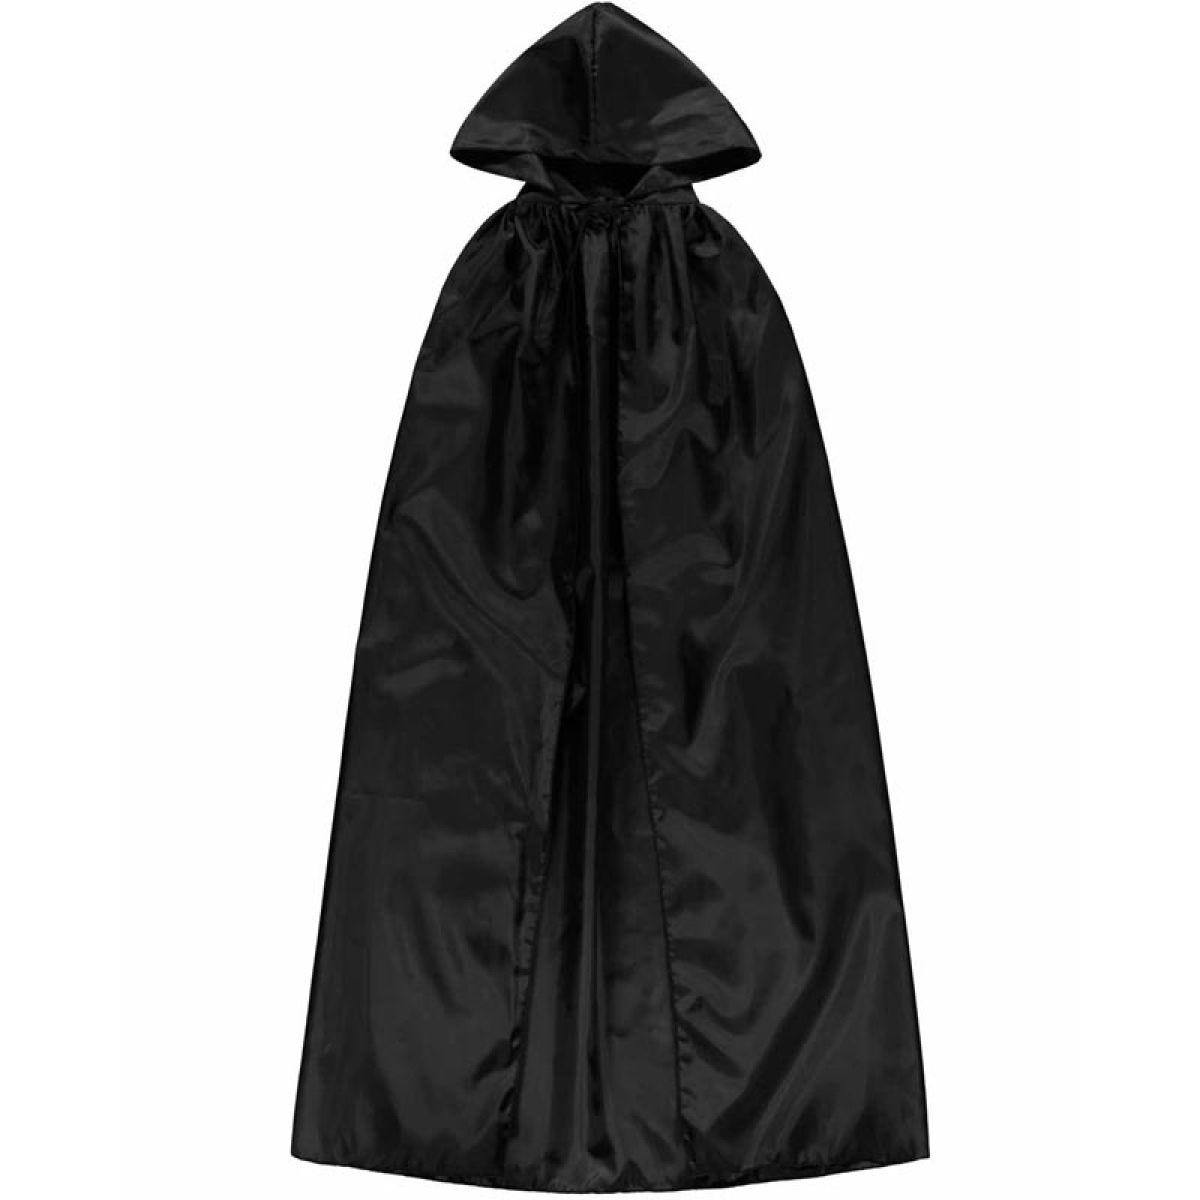 Black Hooded Cape - Adult Costume